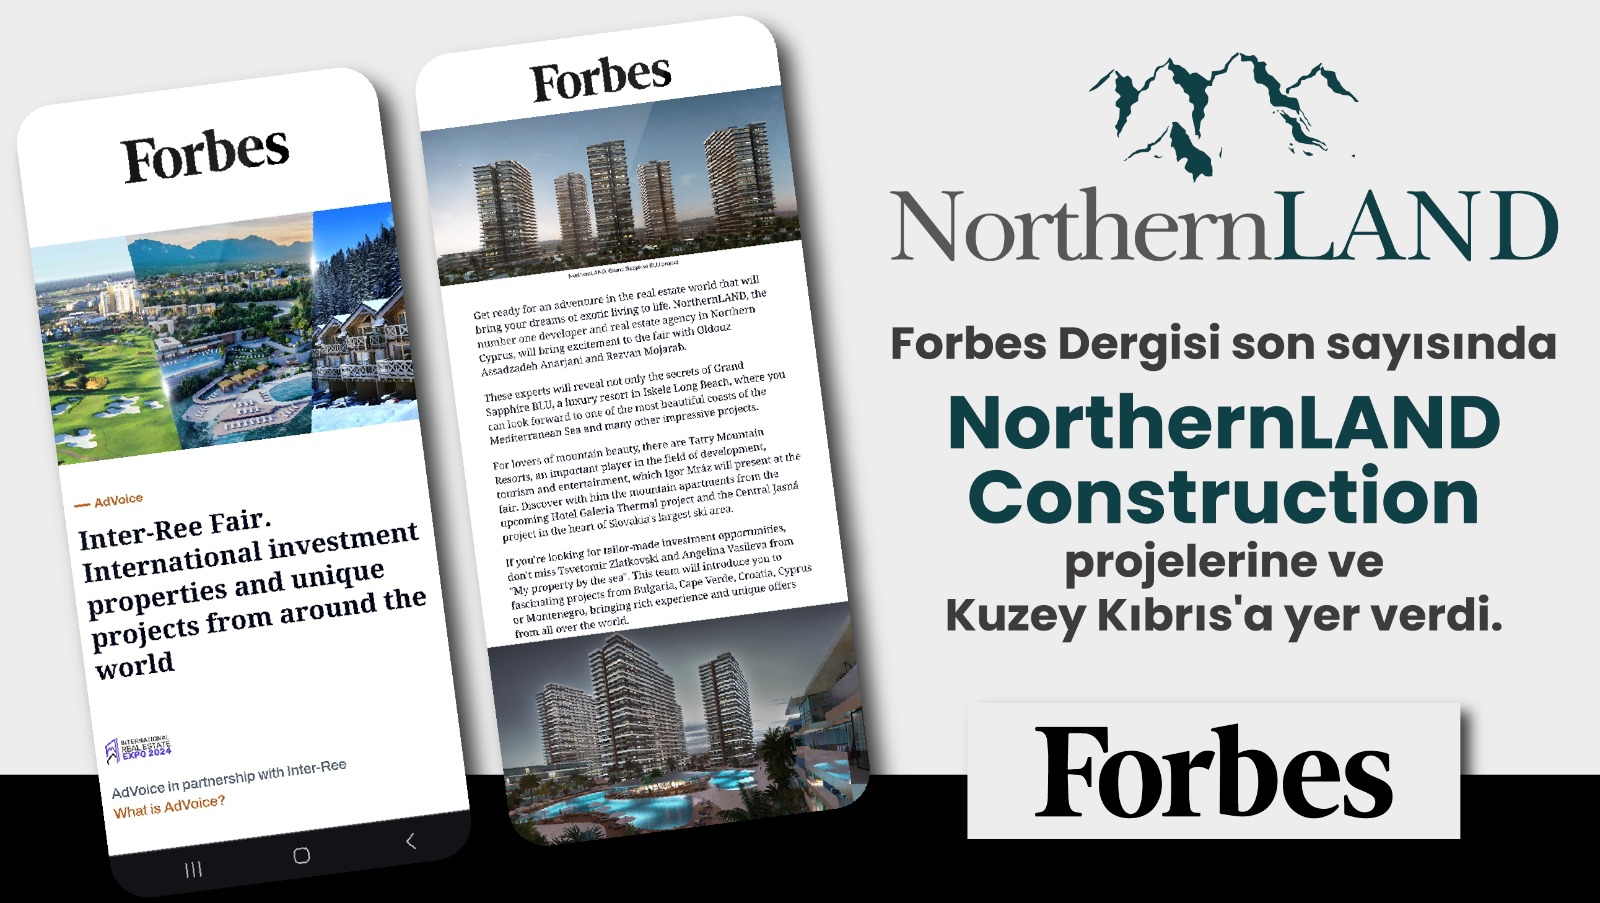 NorthernLAND’ın başarısı Forbes’e yansıdı